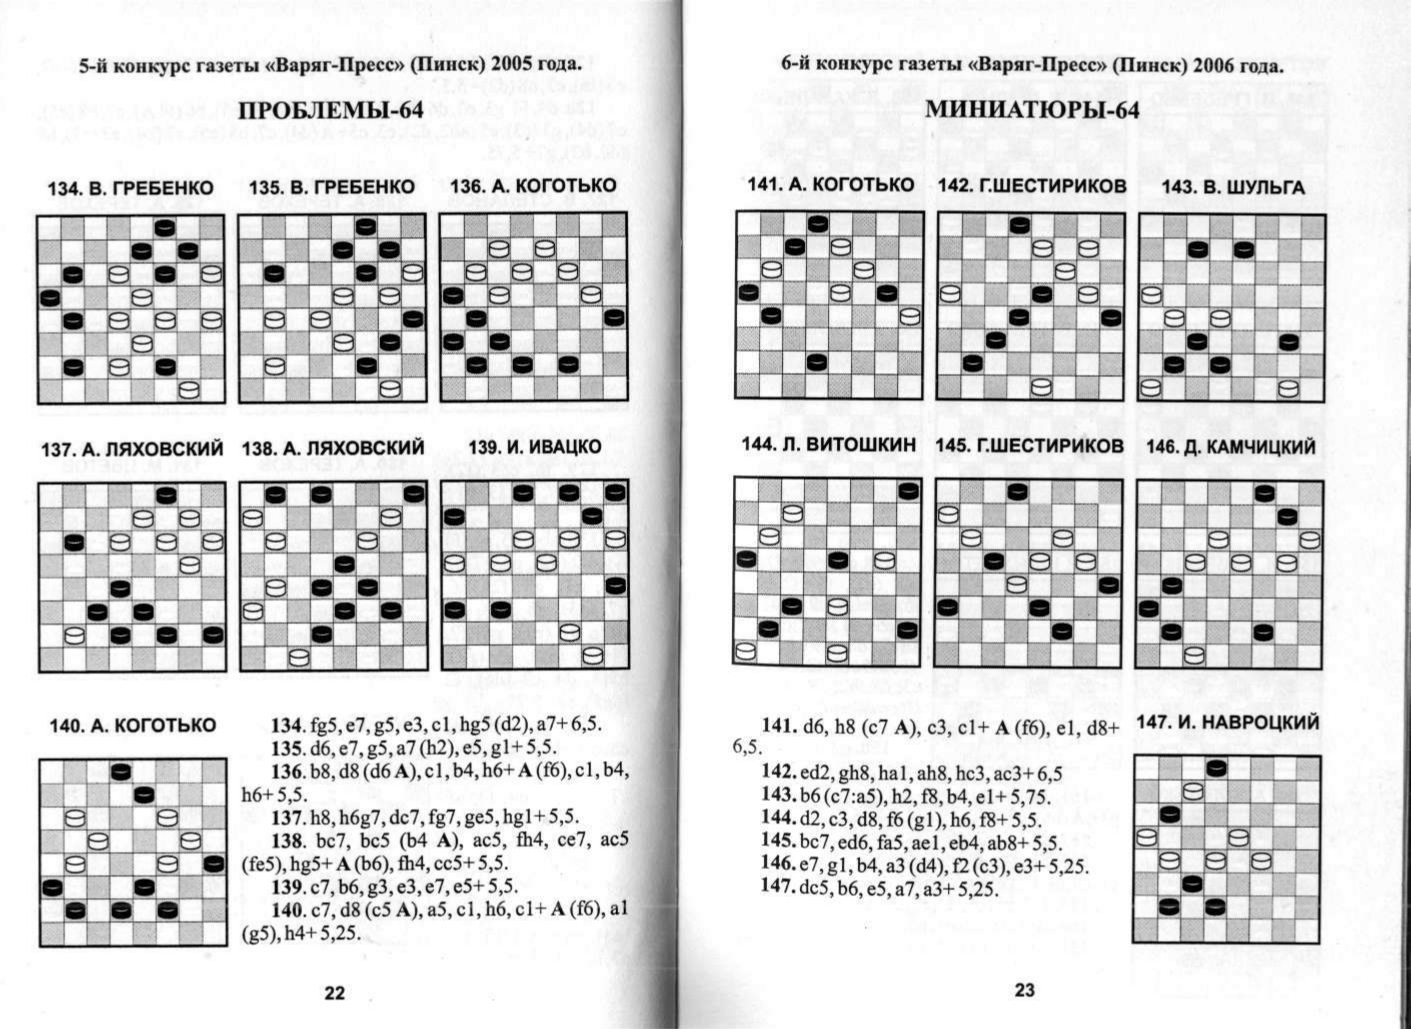 КОГОТЬКО_По следам шашечной композиции_page-0012.jpg